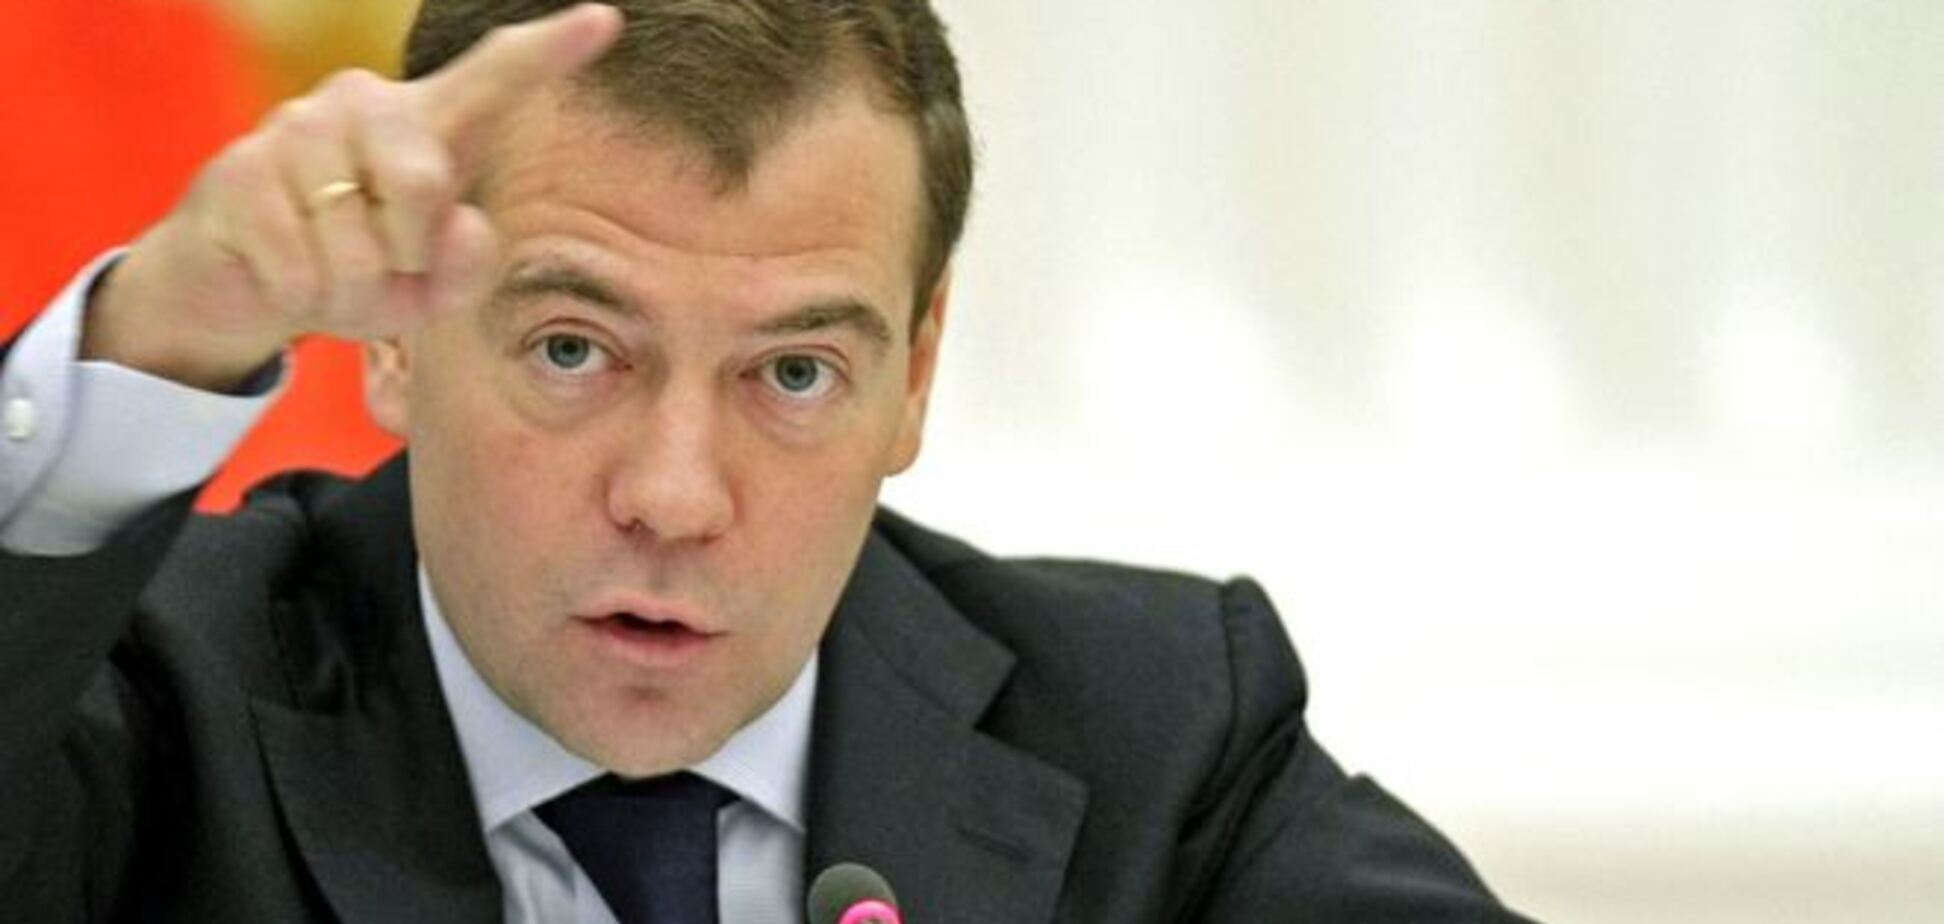 Медведев увидел в новых санкциях угрозу роста антиамериканских настроений в мире  